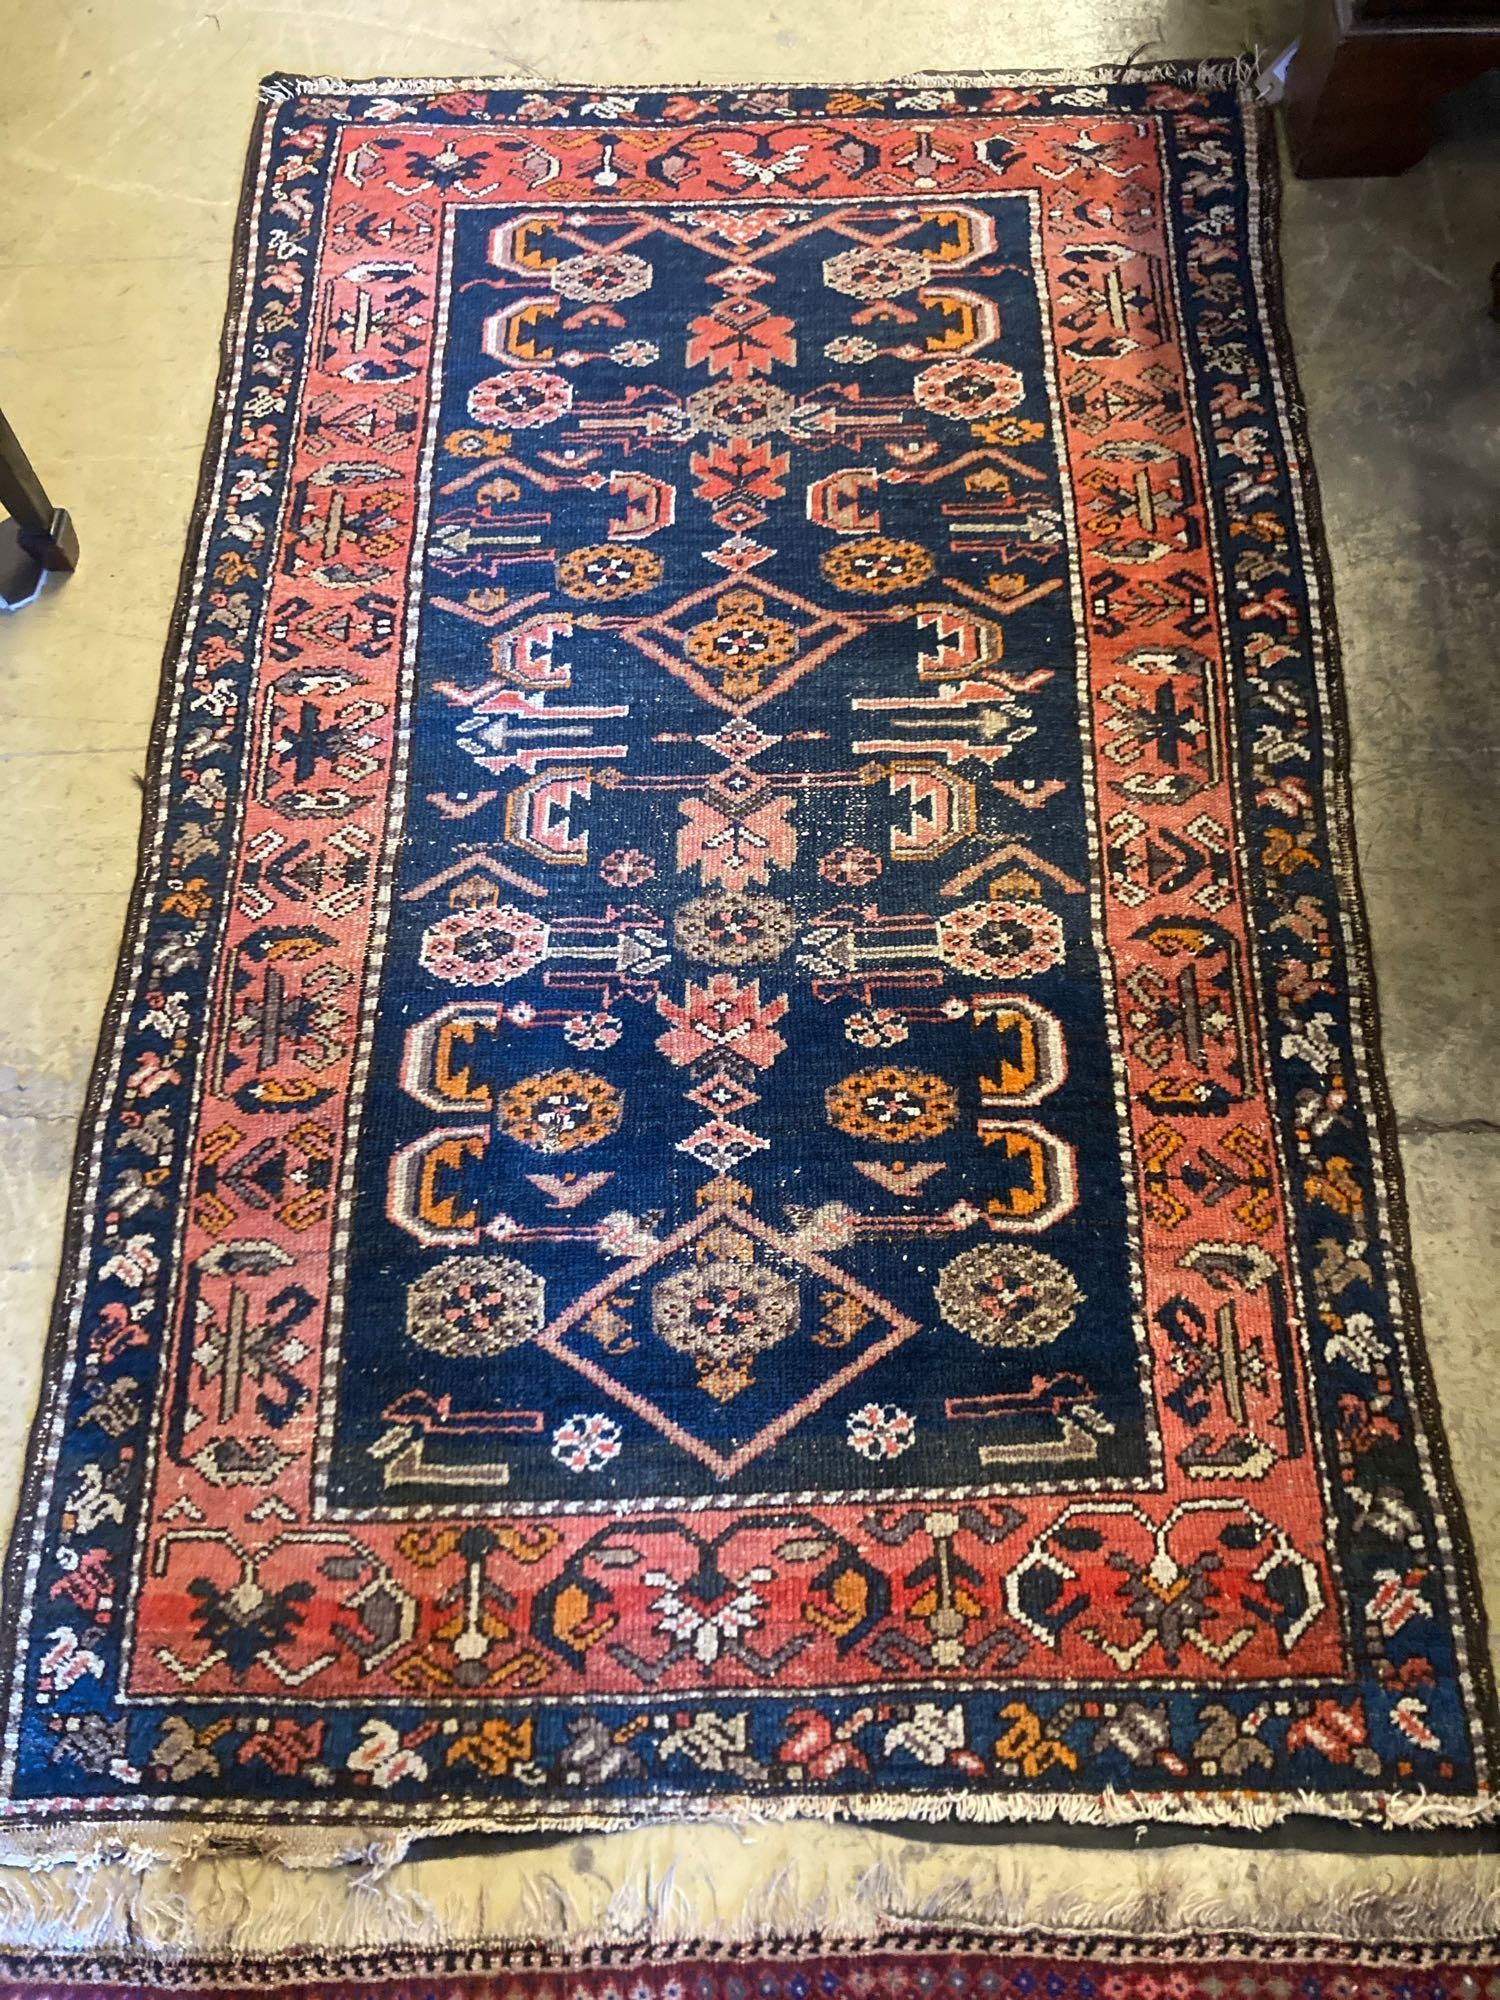 A Belouch blue ground rug, 172 x 110cm